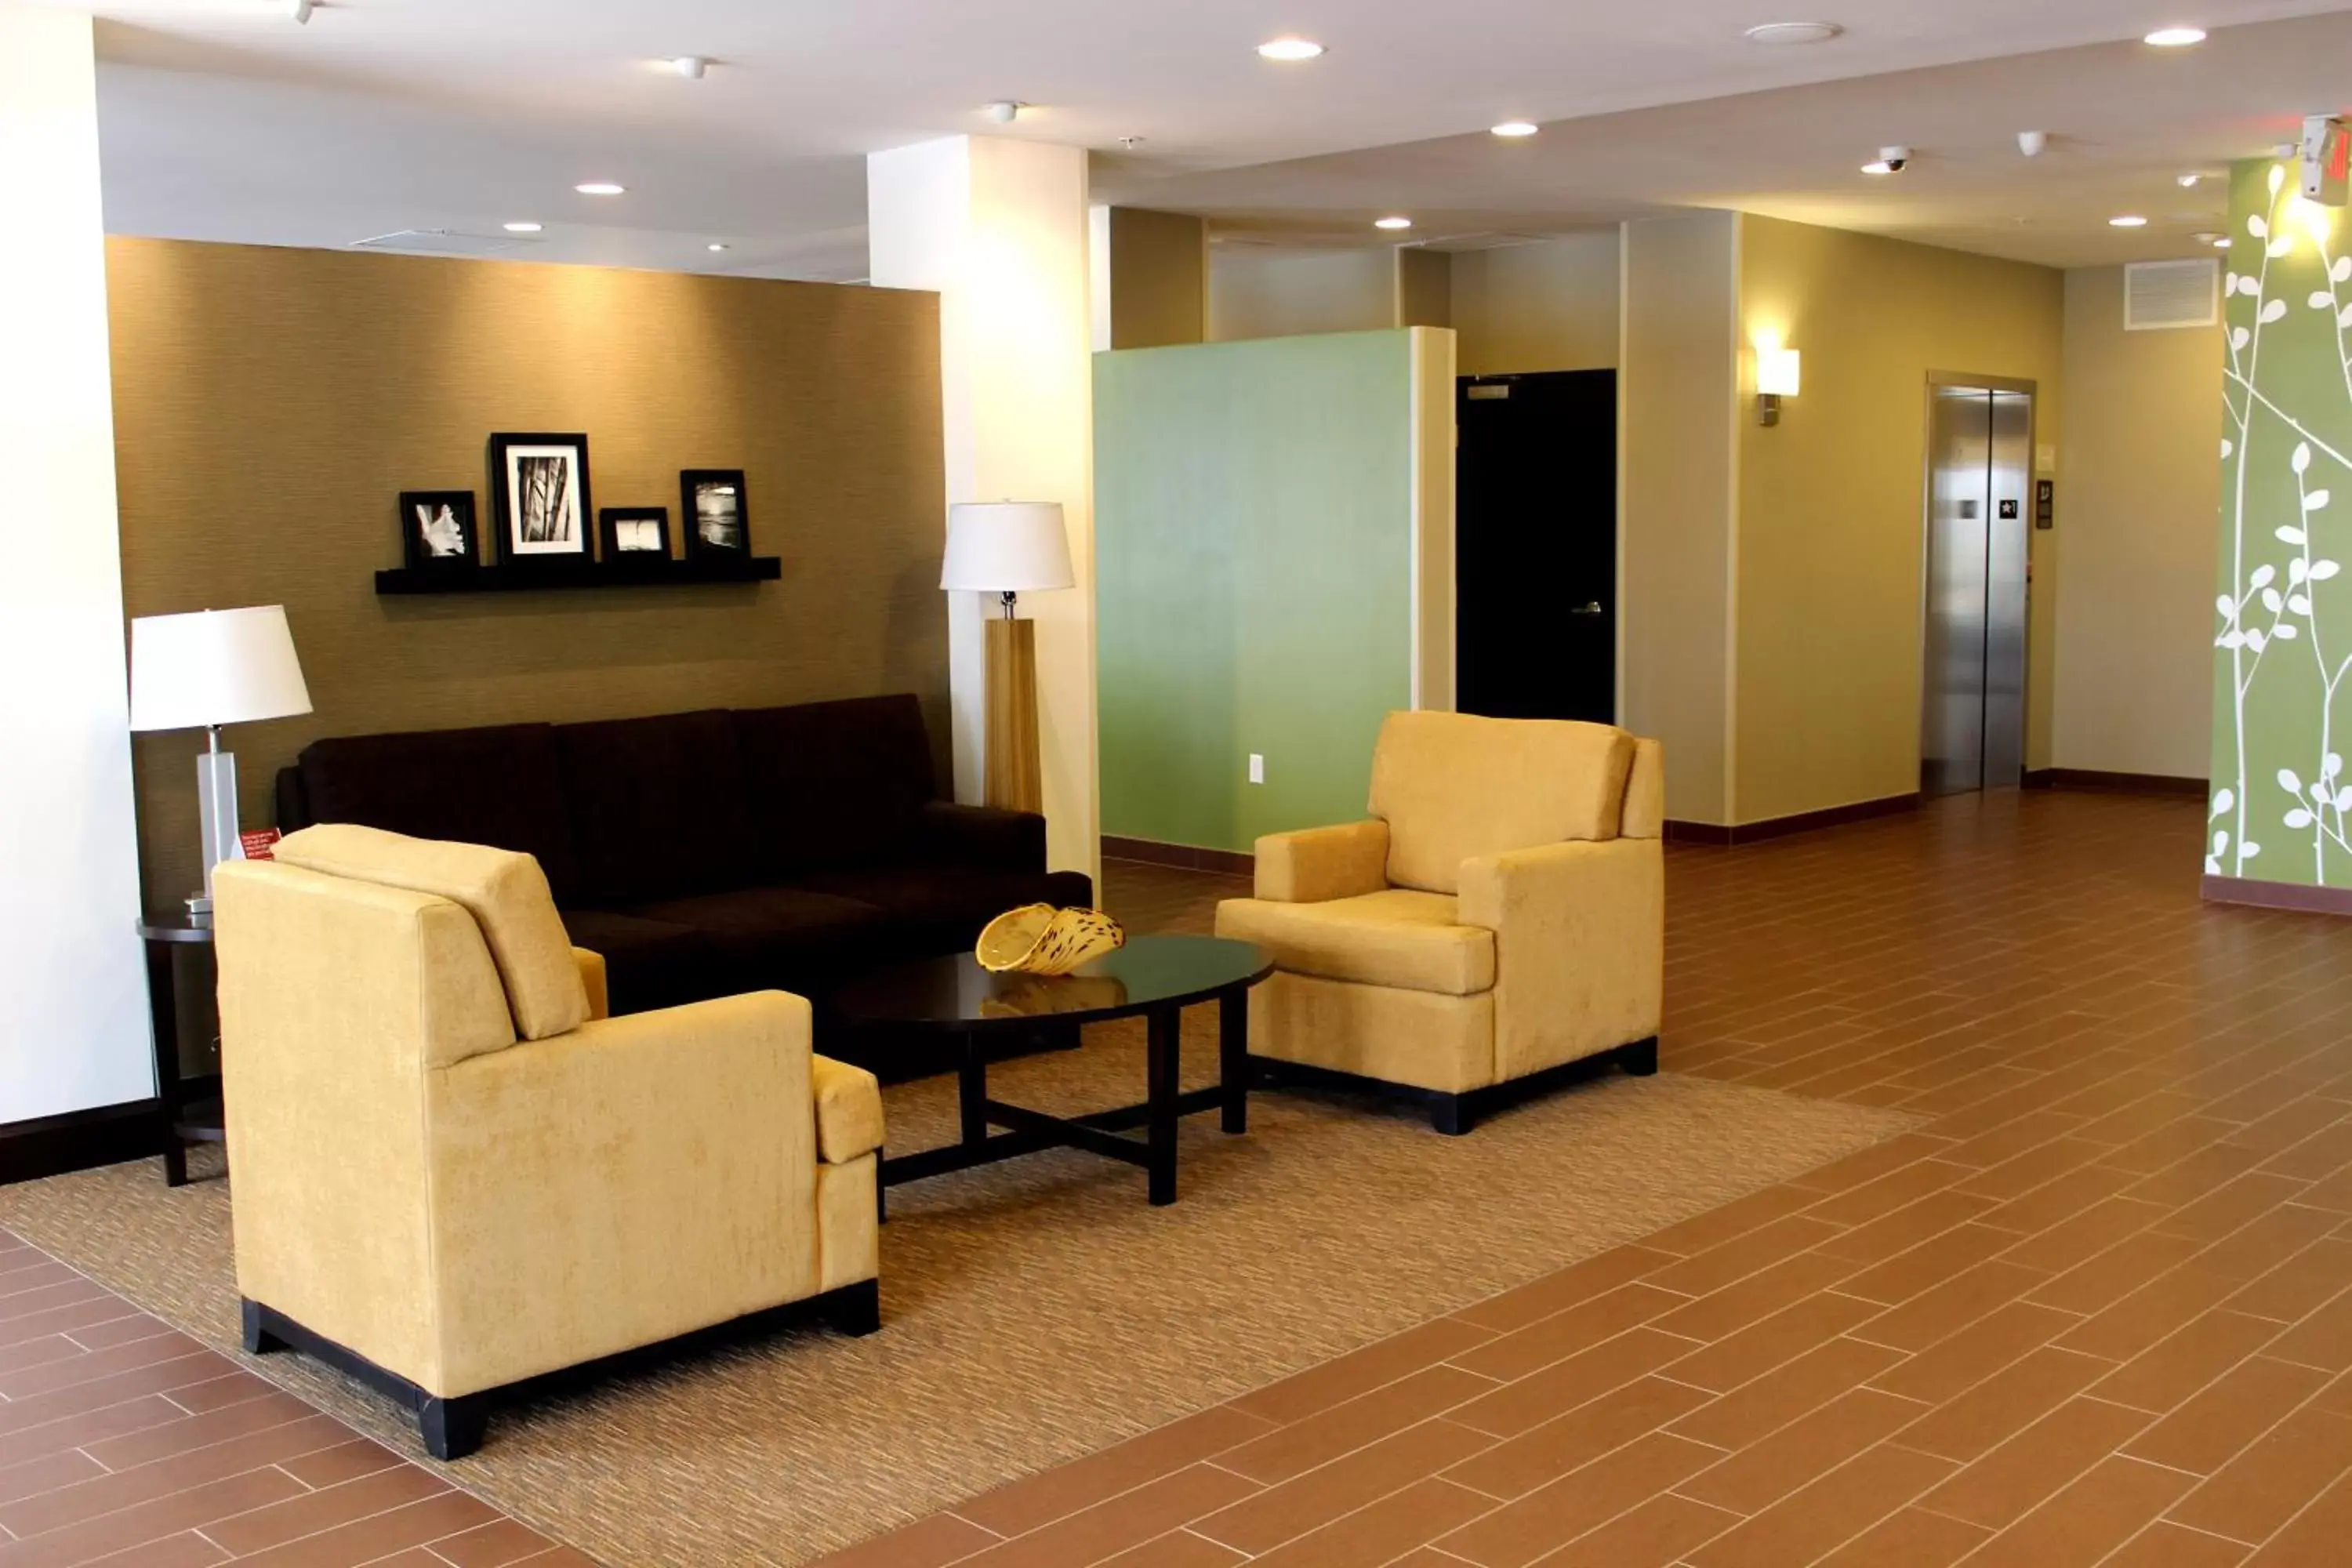 Lobby or reception, Lobby/Reception in Sleep Inn & Suites